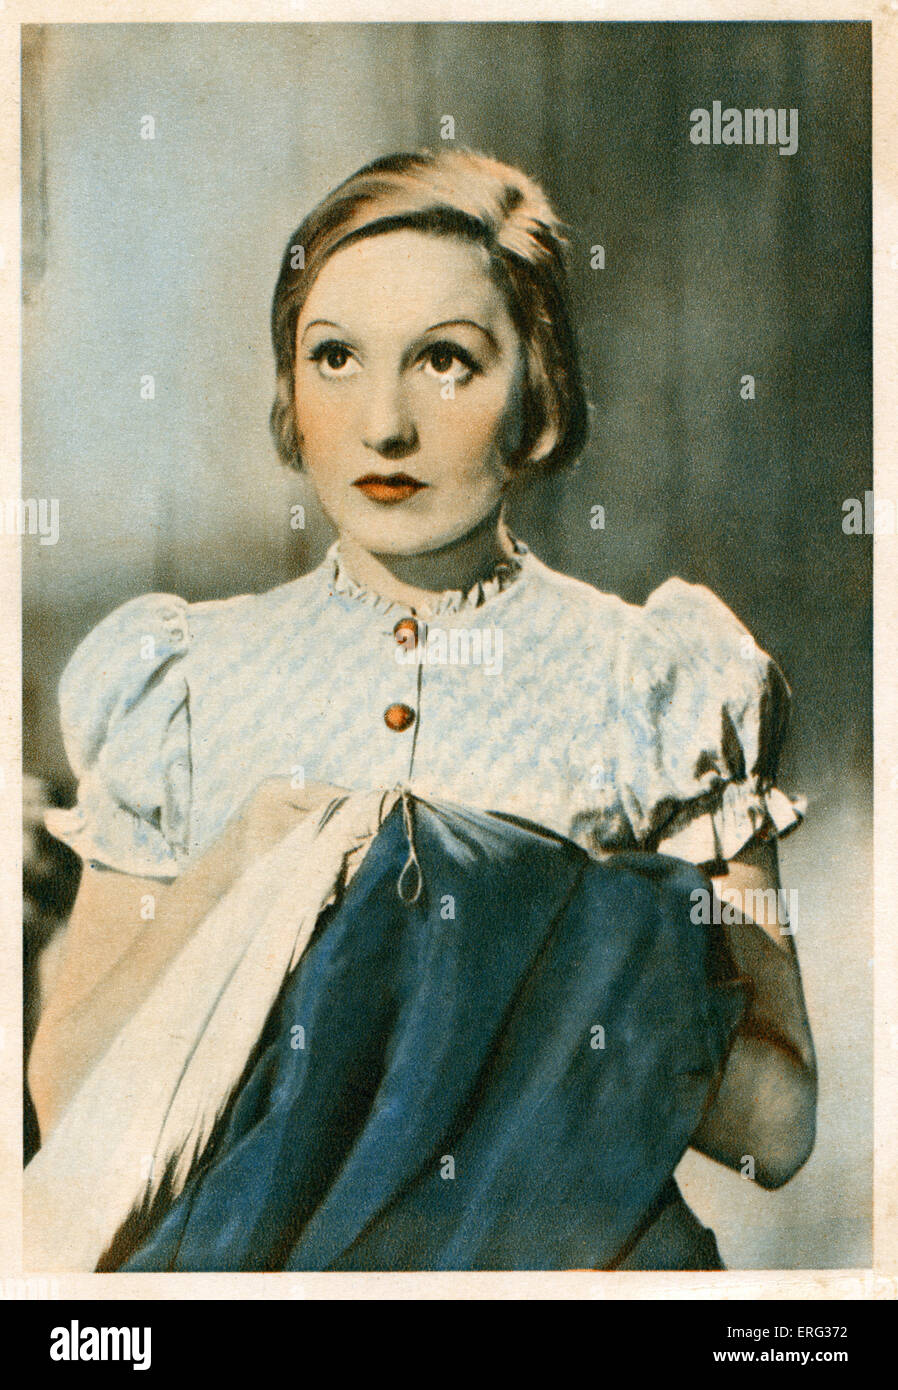 Elisabeth Bergner, österreichische-ukrainischen Schauspielerin 22. August 1897 - 12. Mai 1986. Stockfoto